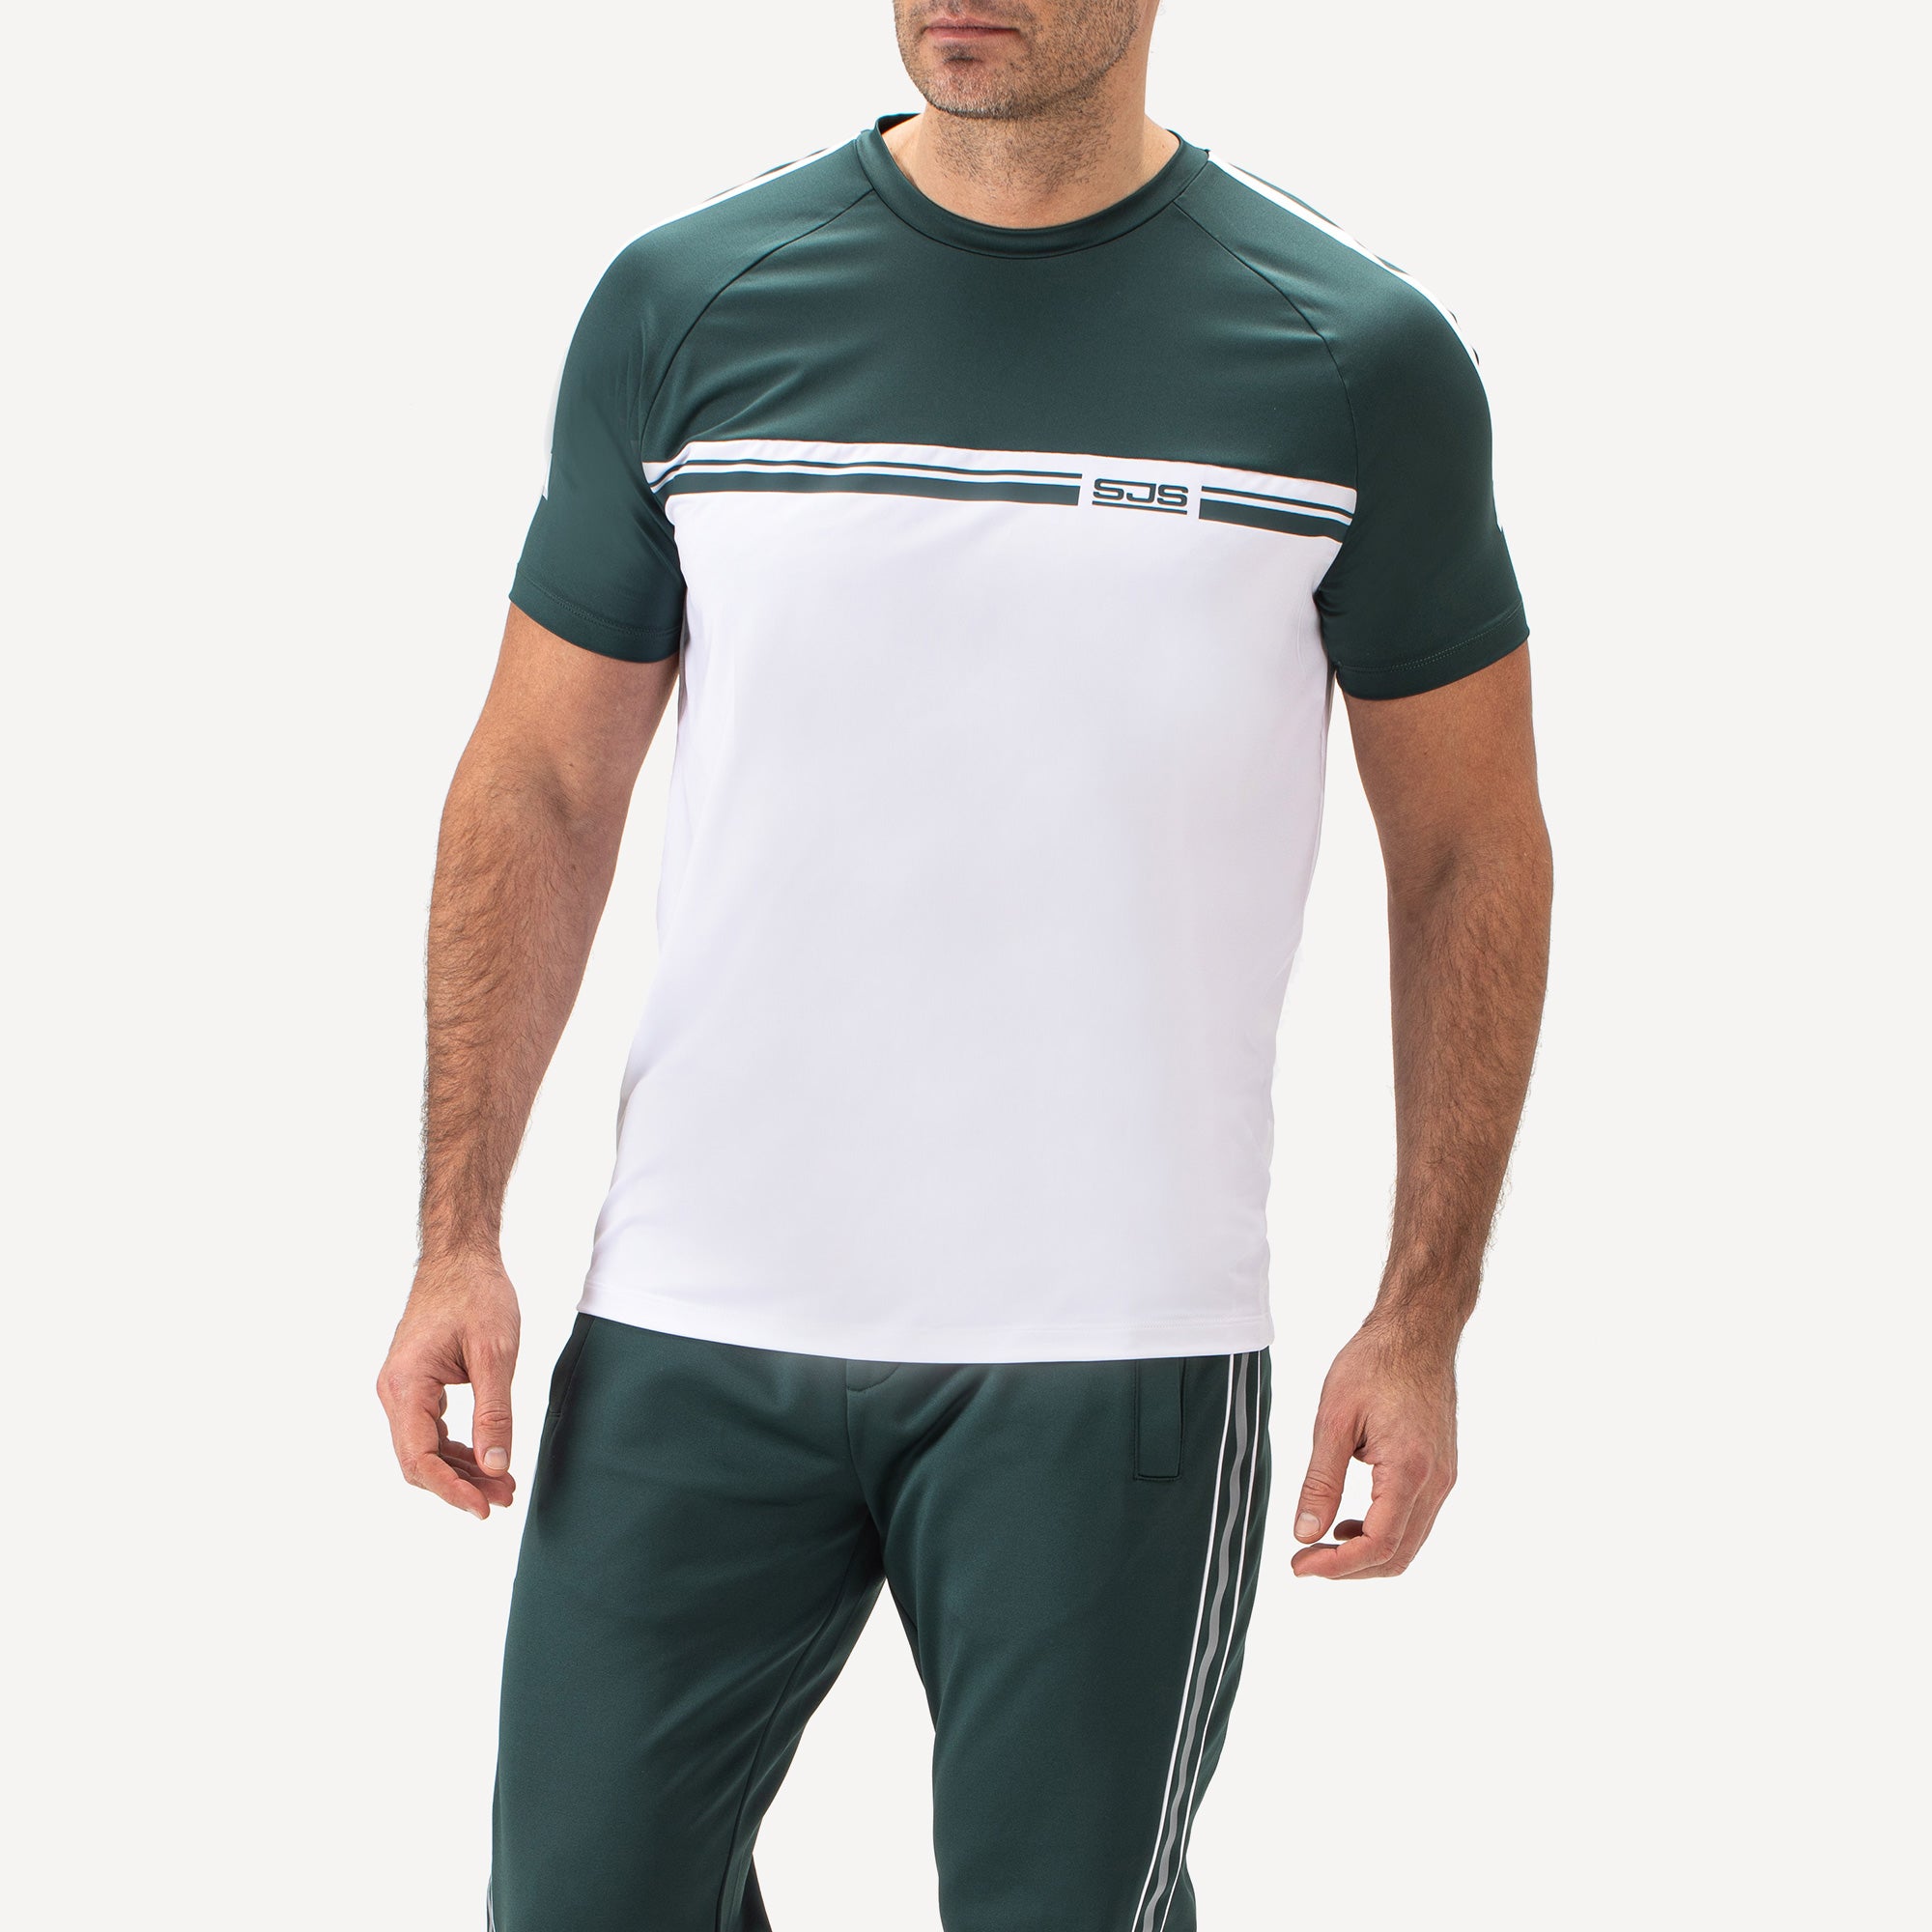 Sjeng Sports Coster Men's Tennis Shirt - Green (1)